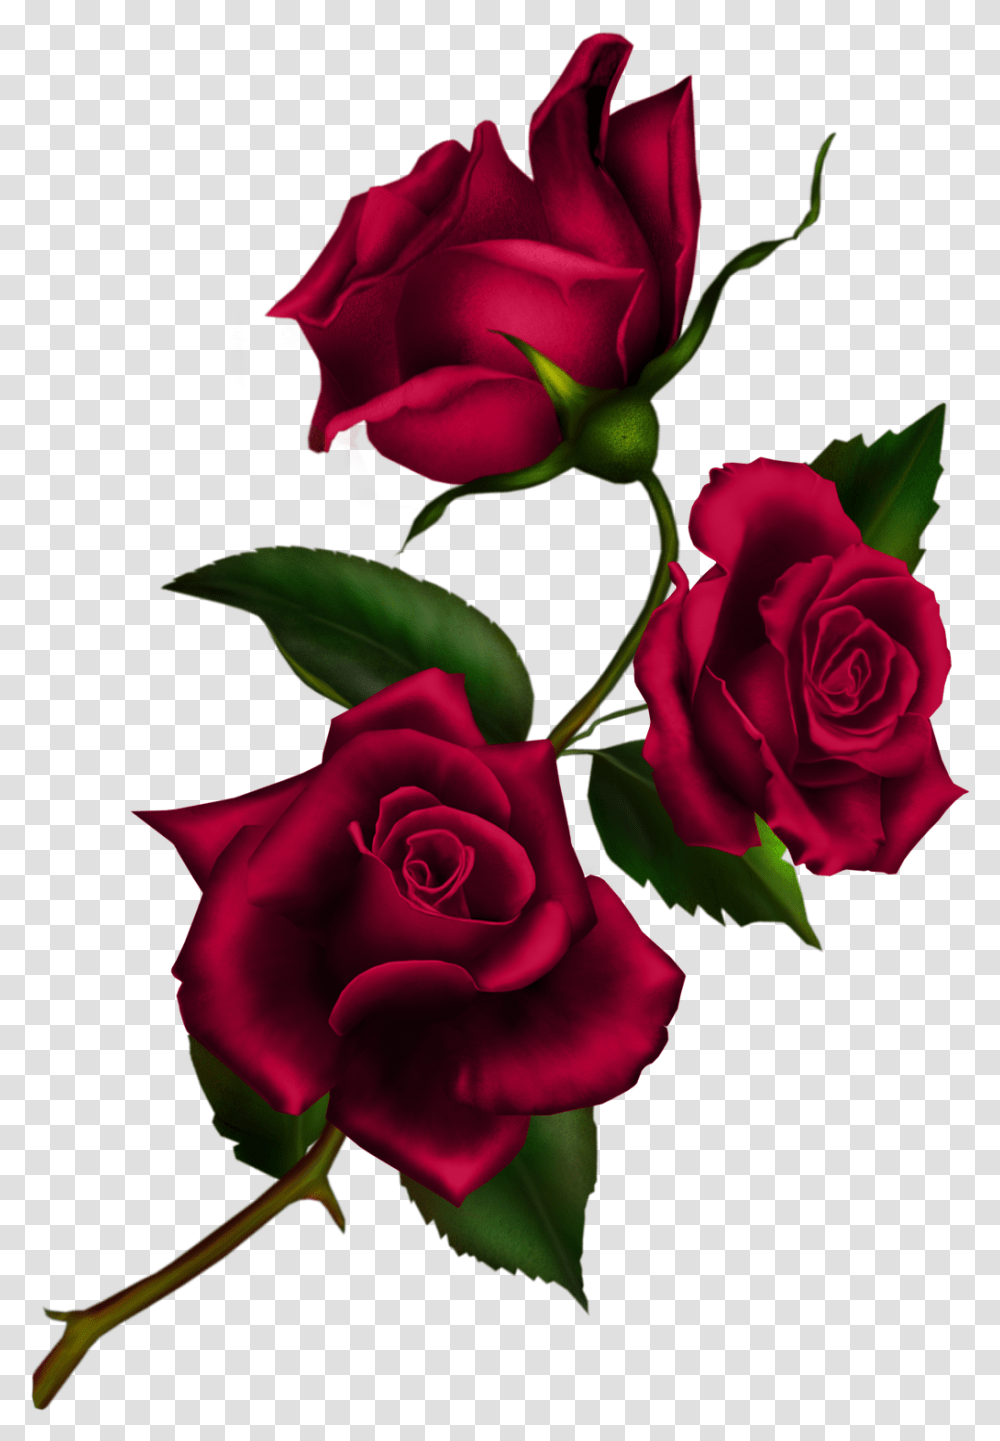 Rose Clip Art Rose With Stem, Flower, Plant, Blossom, Flower Arrangement Transparent Png